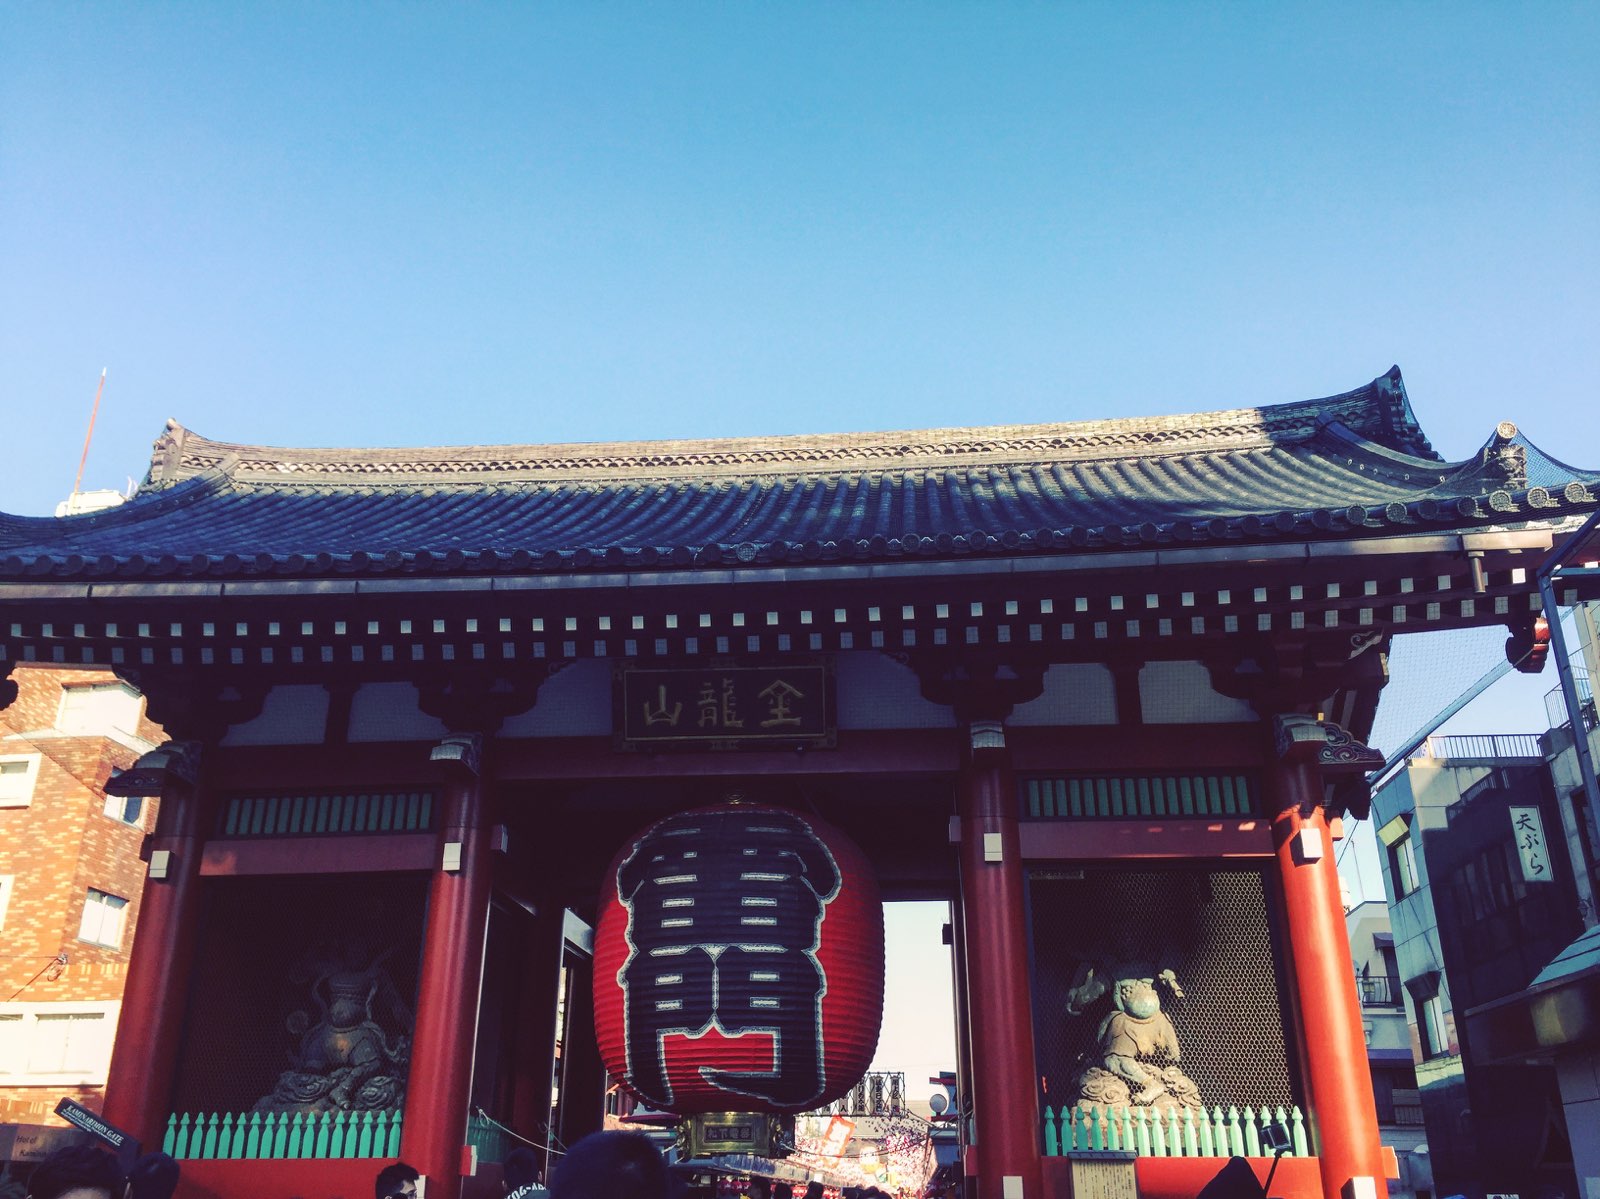 浅草寺是东京都内最古老的寺庙。相传在推古天皇三十六年(公元628年)，